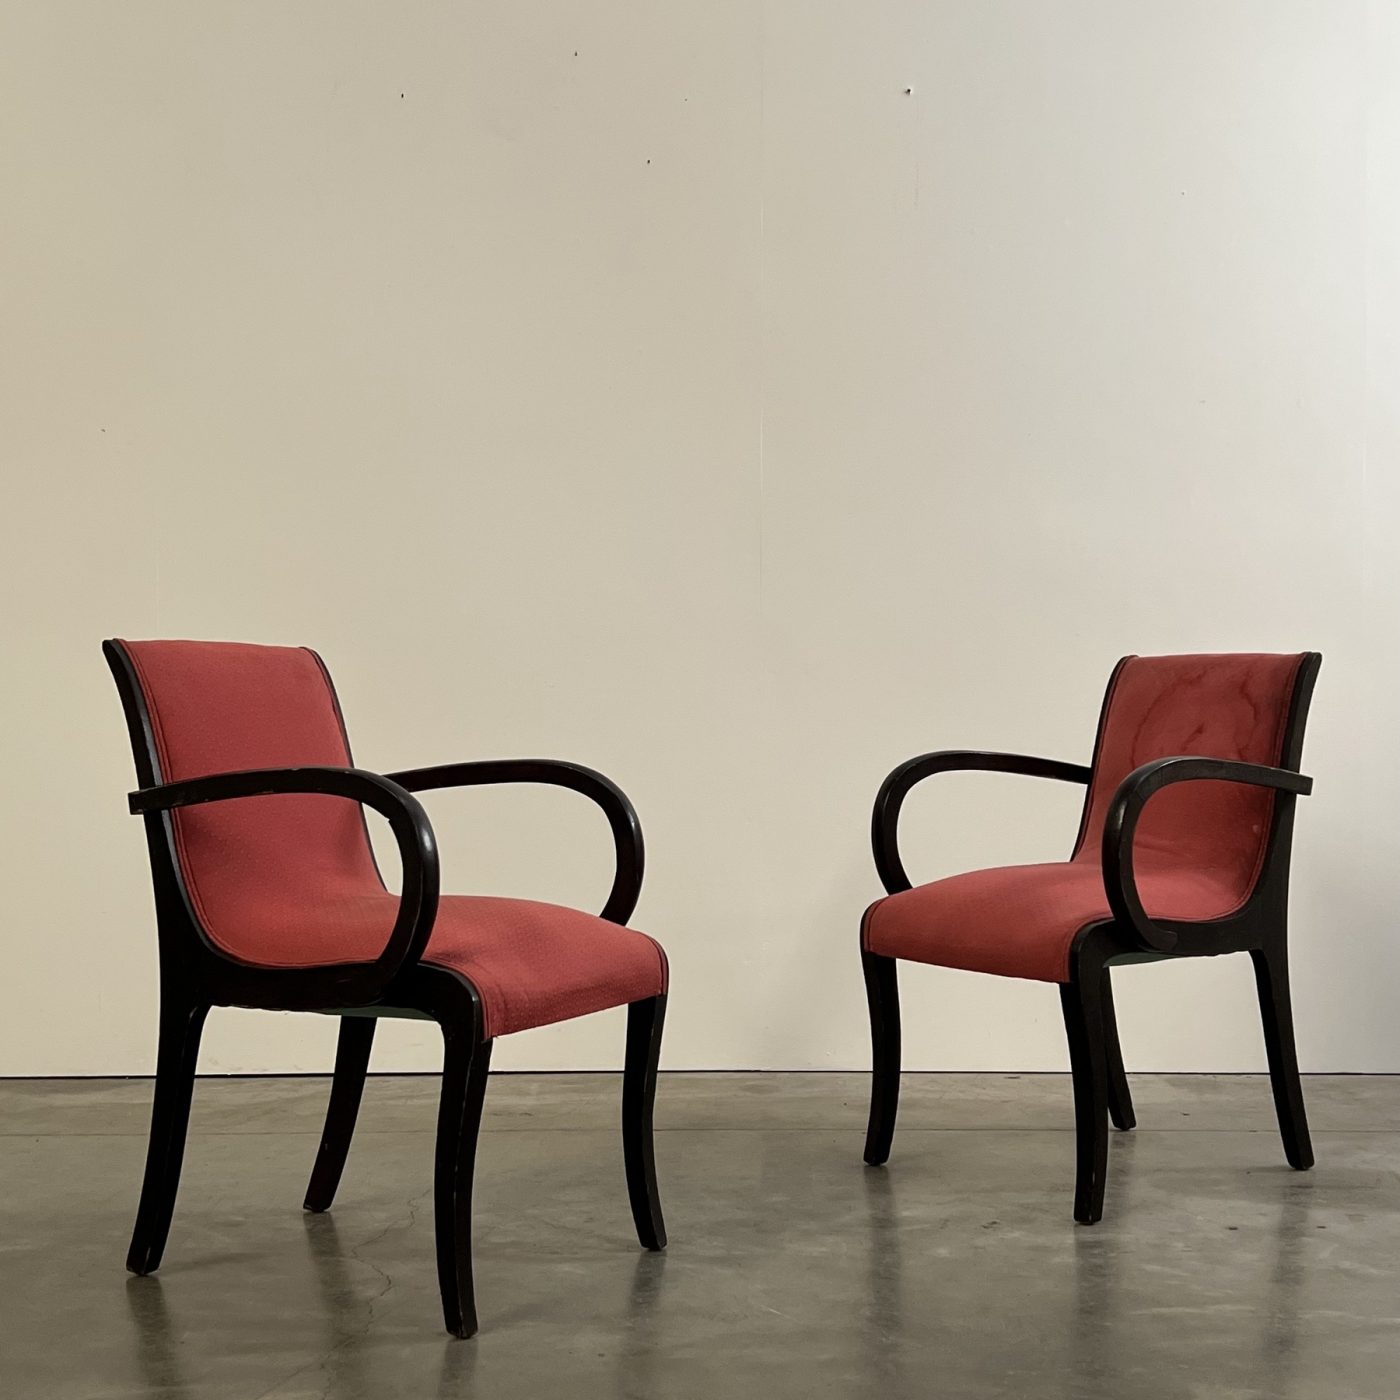 objet-vagabond-artdeco-armchairs0007